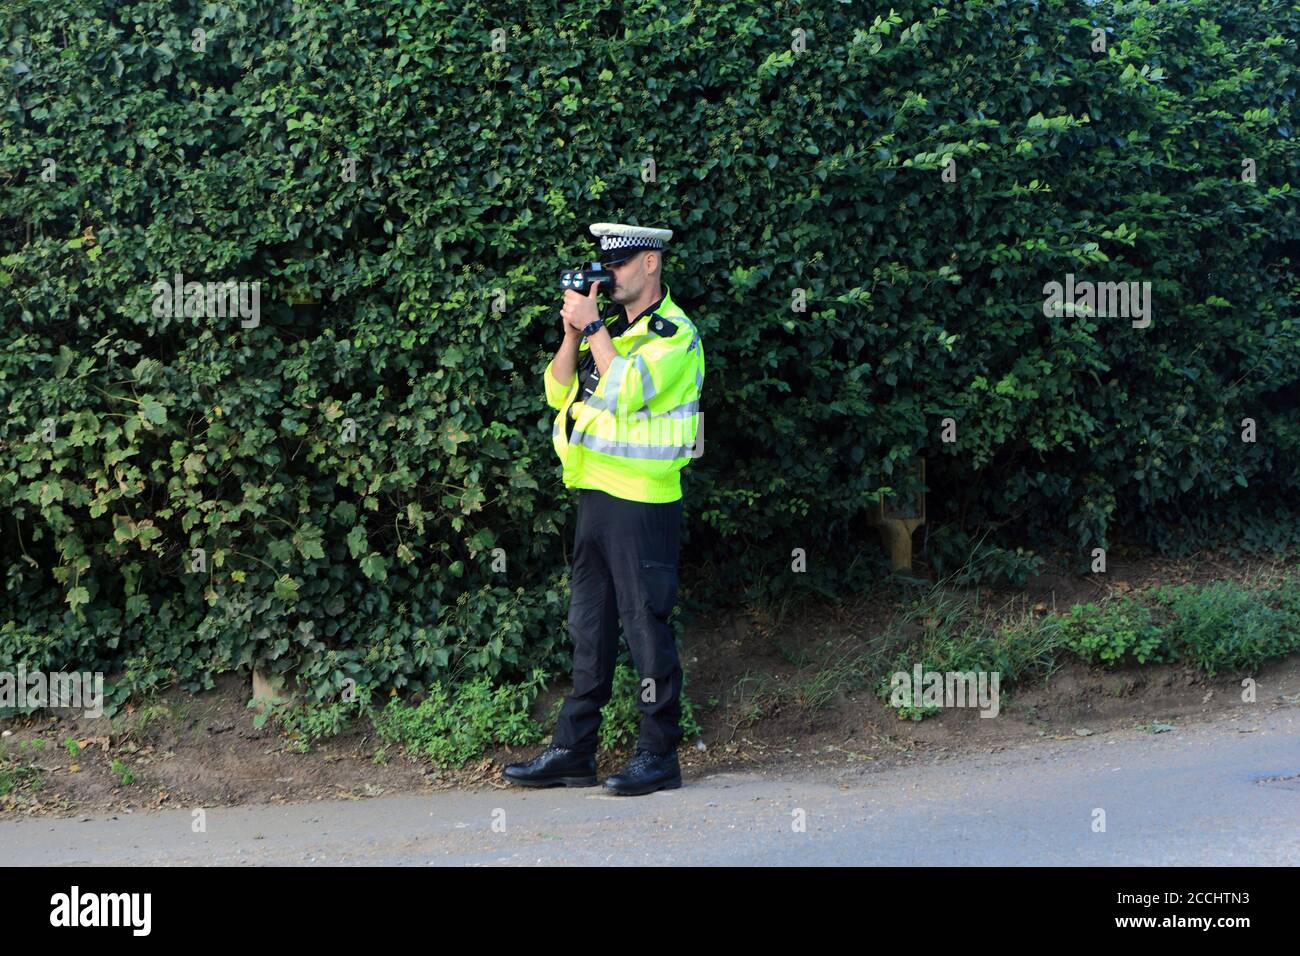 Policier, caméra de vitesse de fonctionnement, portable, bord de route, piège à vitesse, pour véhicules, Norfolk, Angleterre, Royaume-Uni Banque D'Images